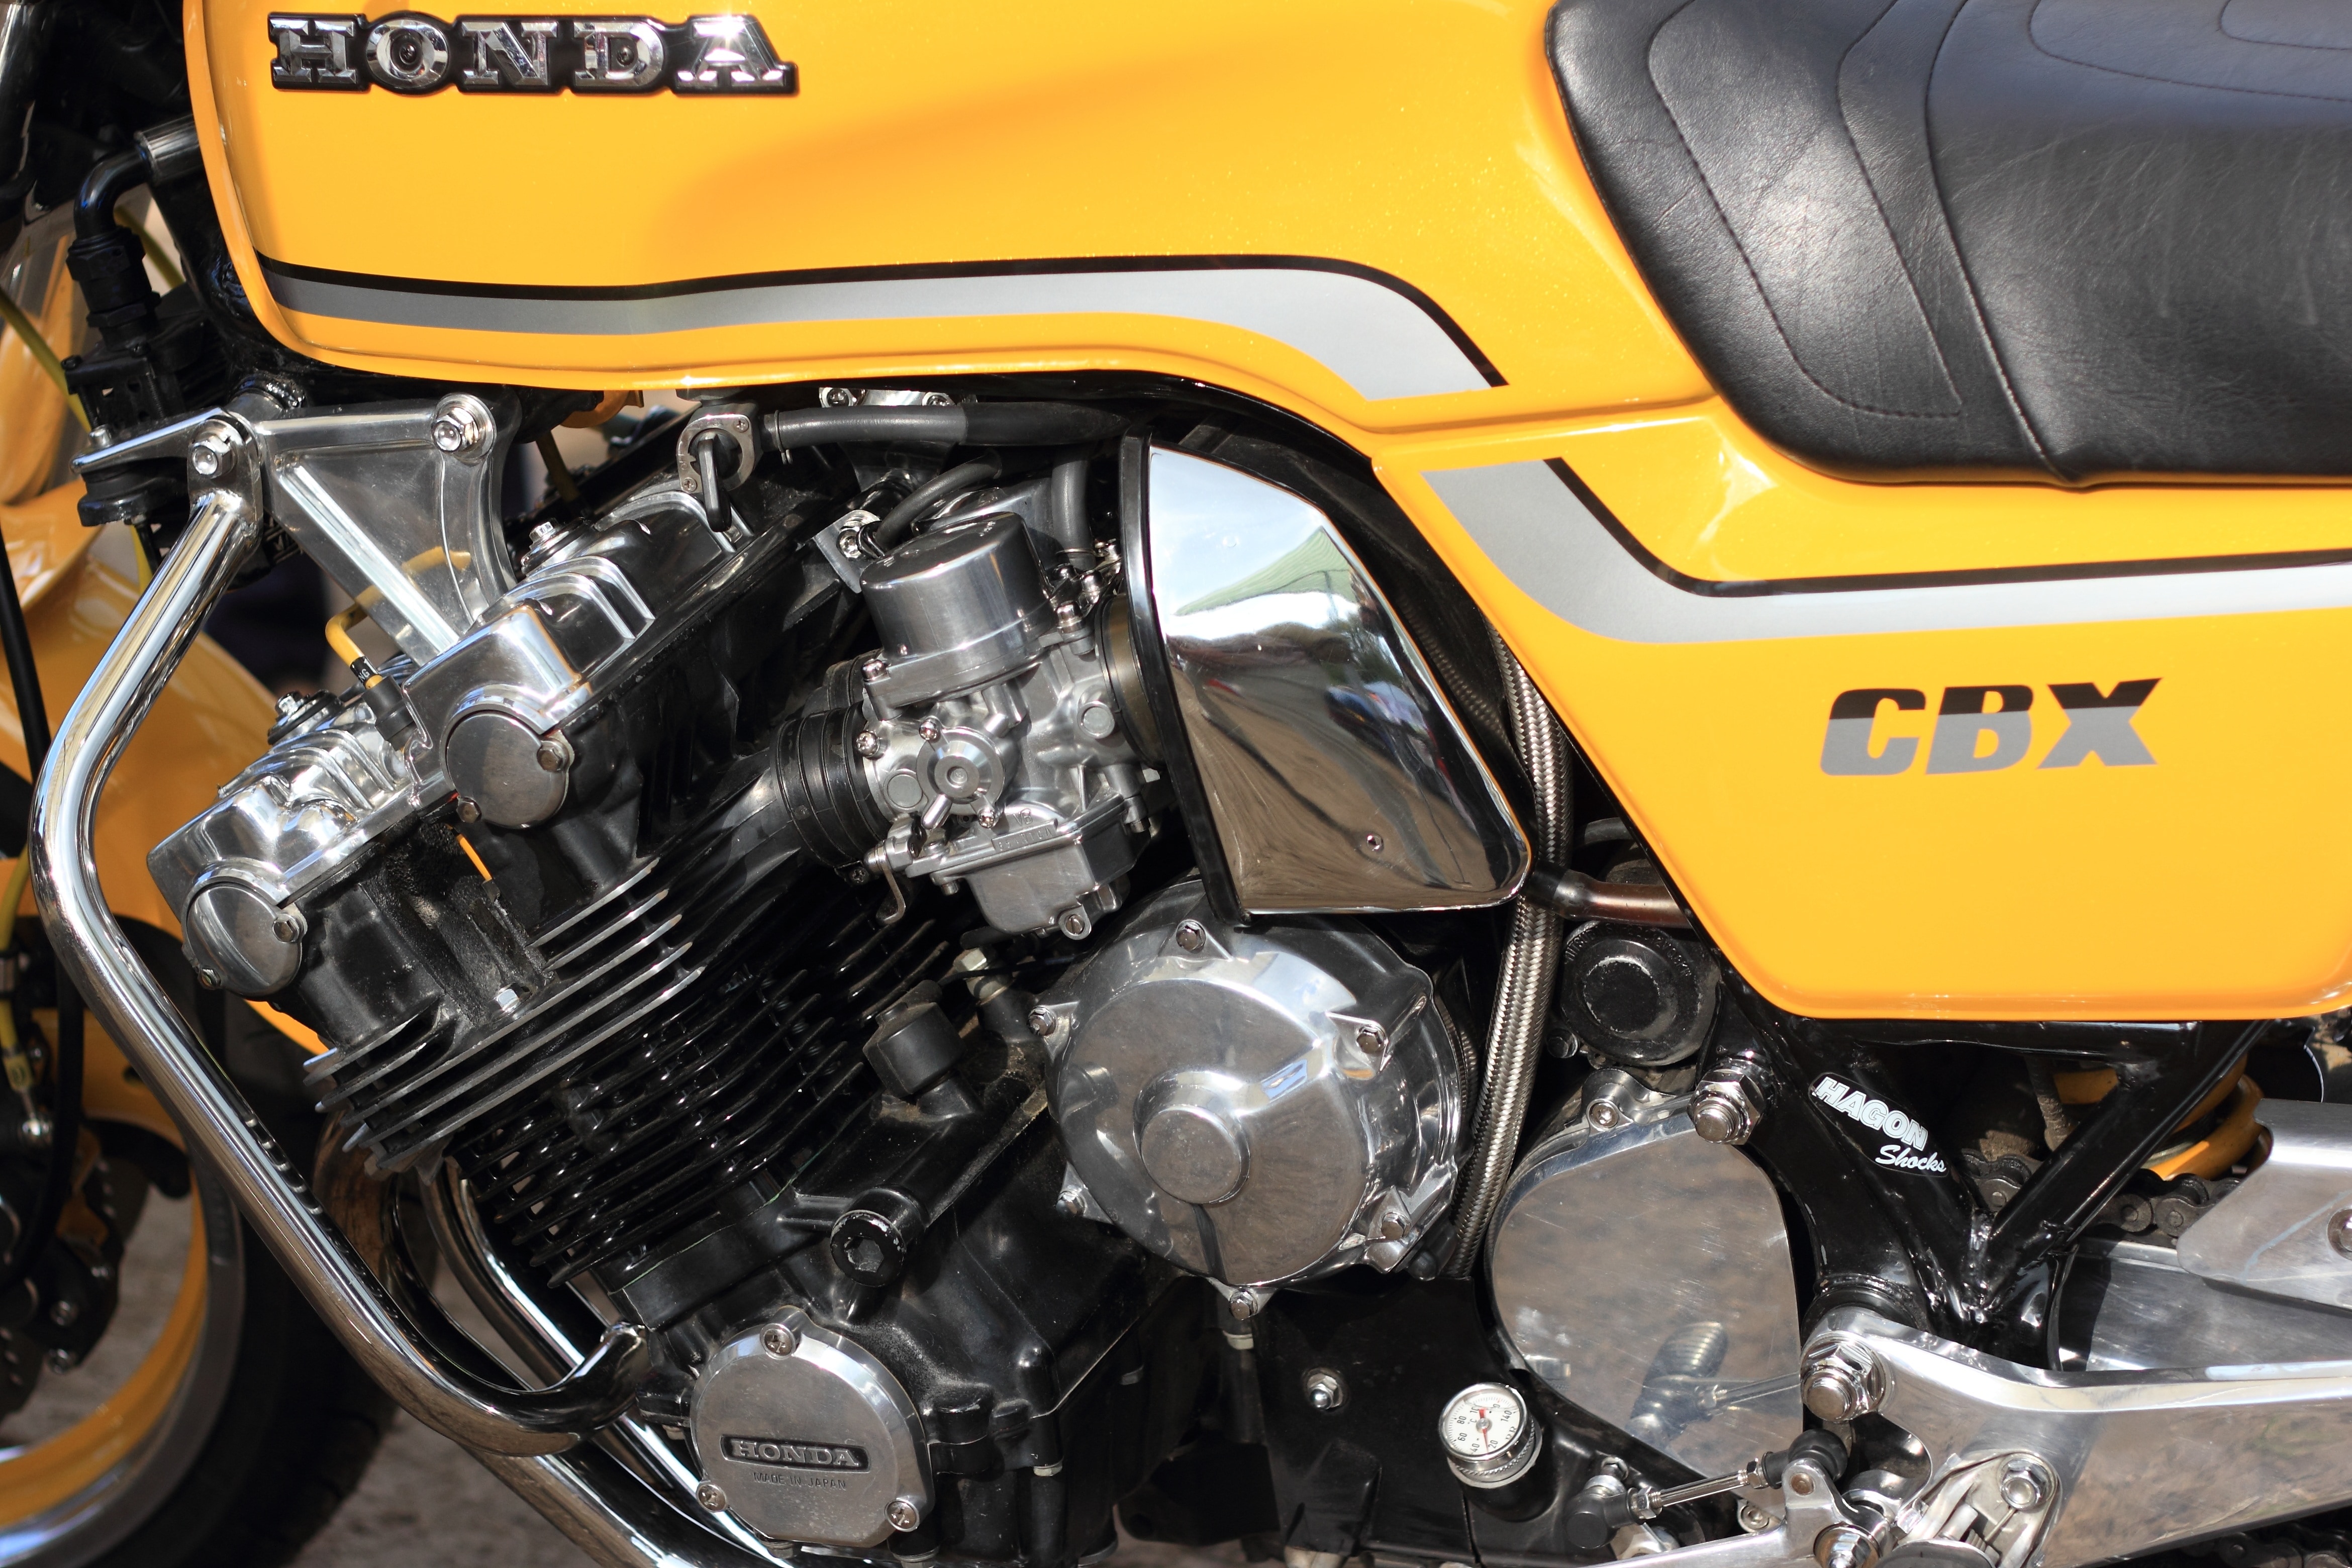 yellow and black Honda naked motorcycle